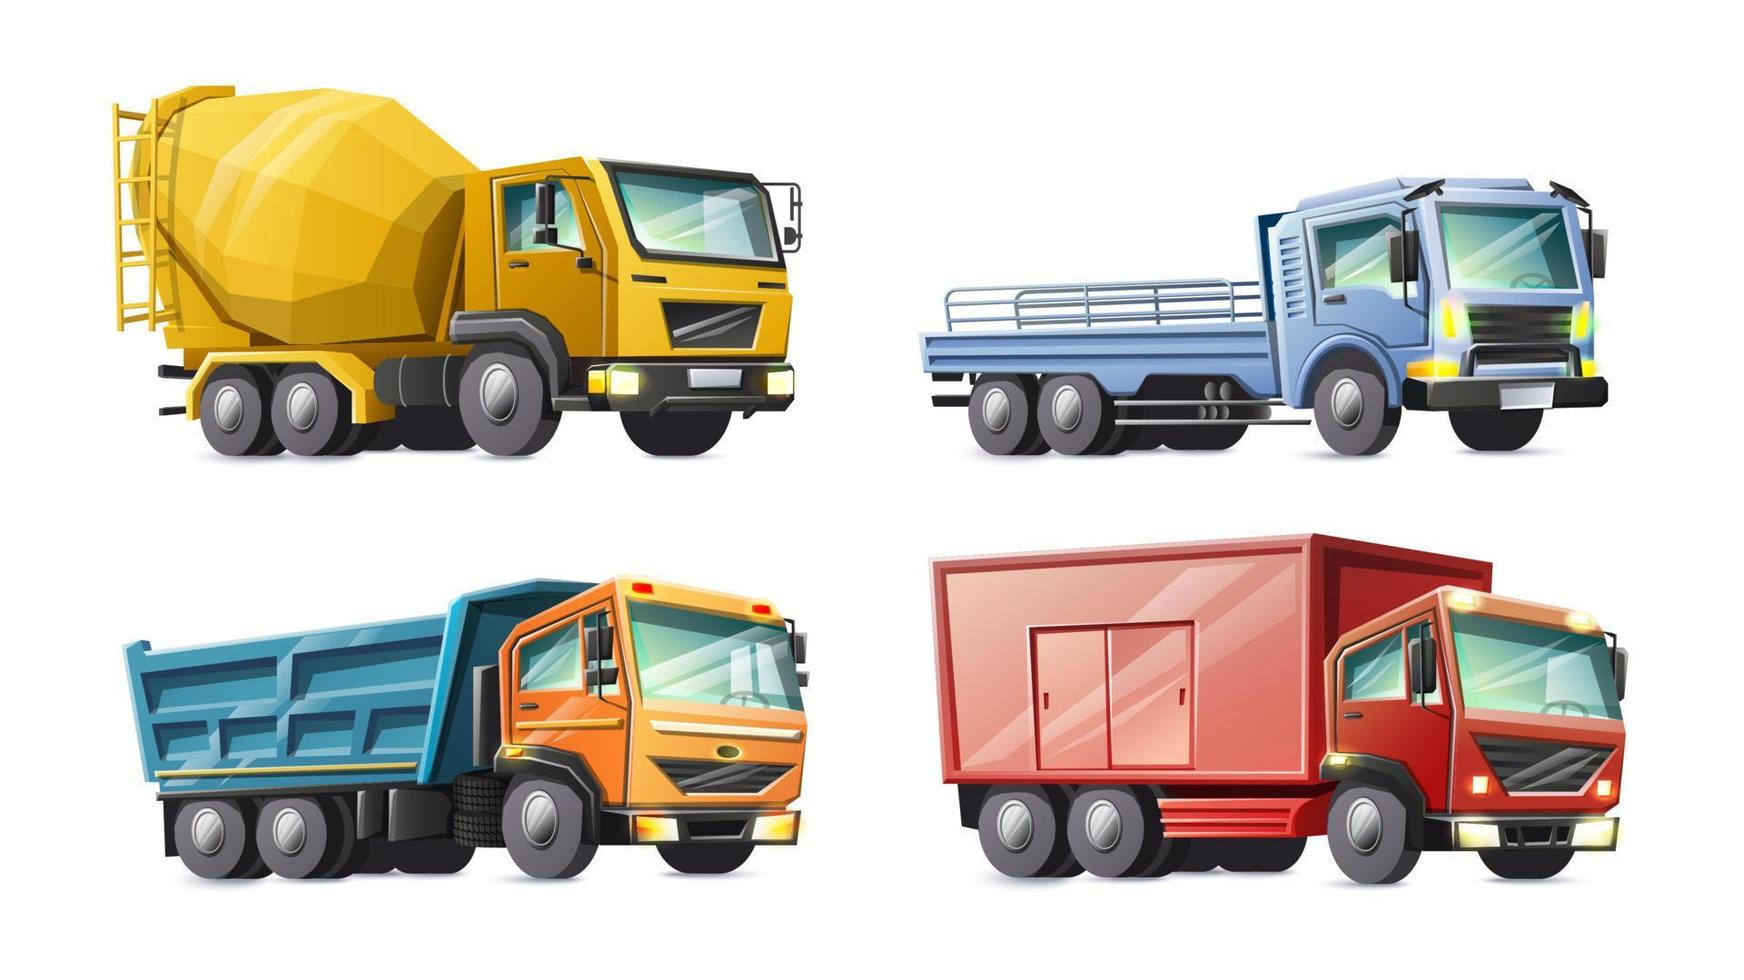 collezione in stile cartone animato vettoriale di camion colorati per bambini. isolato su sfondo bianco.